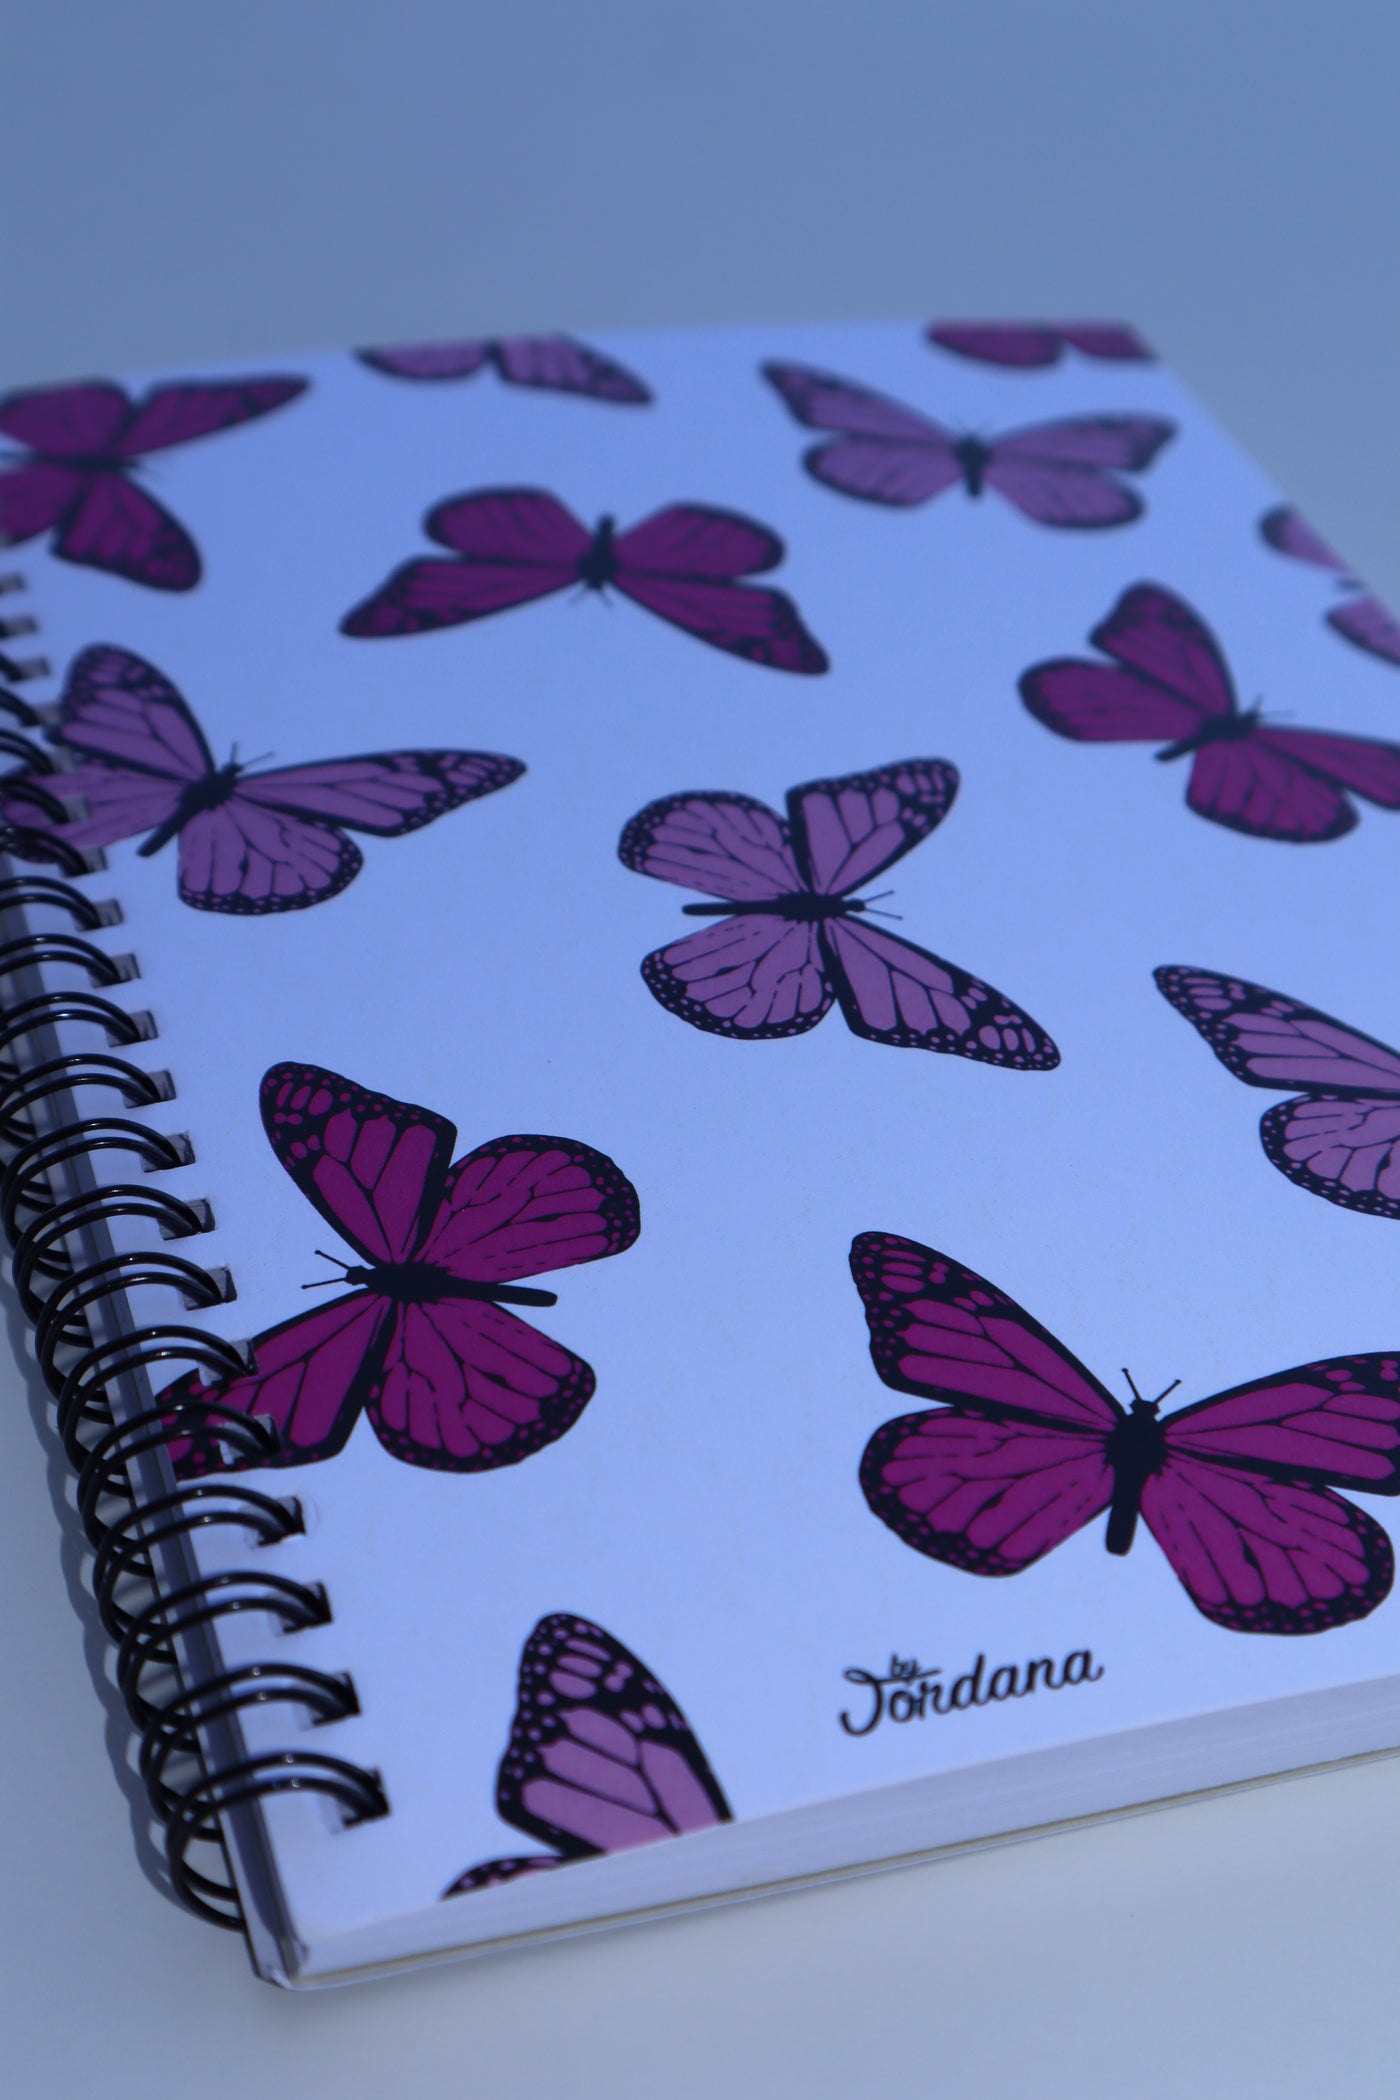 Pink Butterfly Spiral Notebook